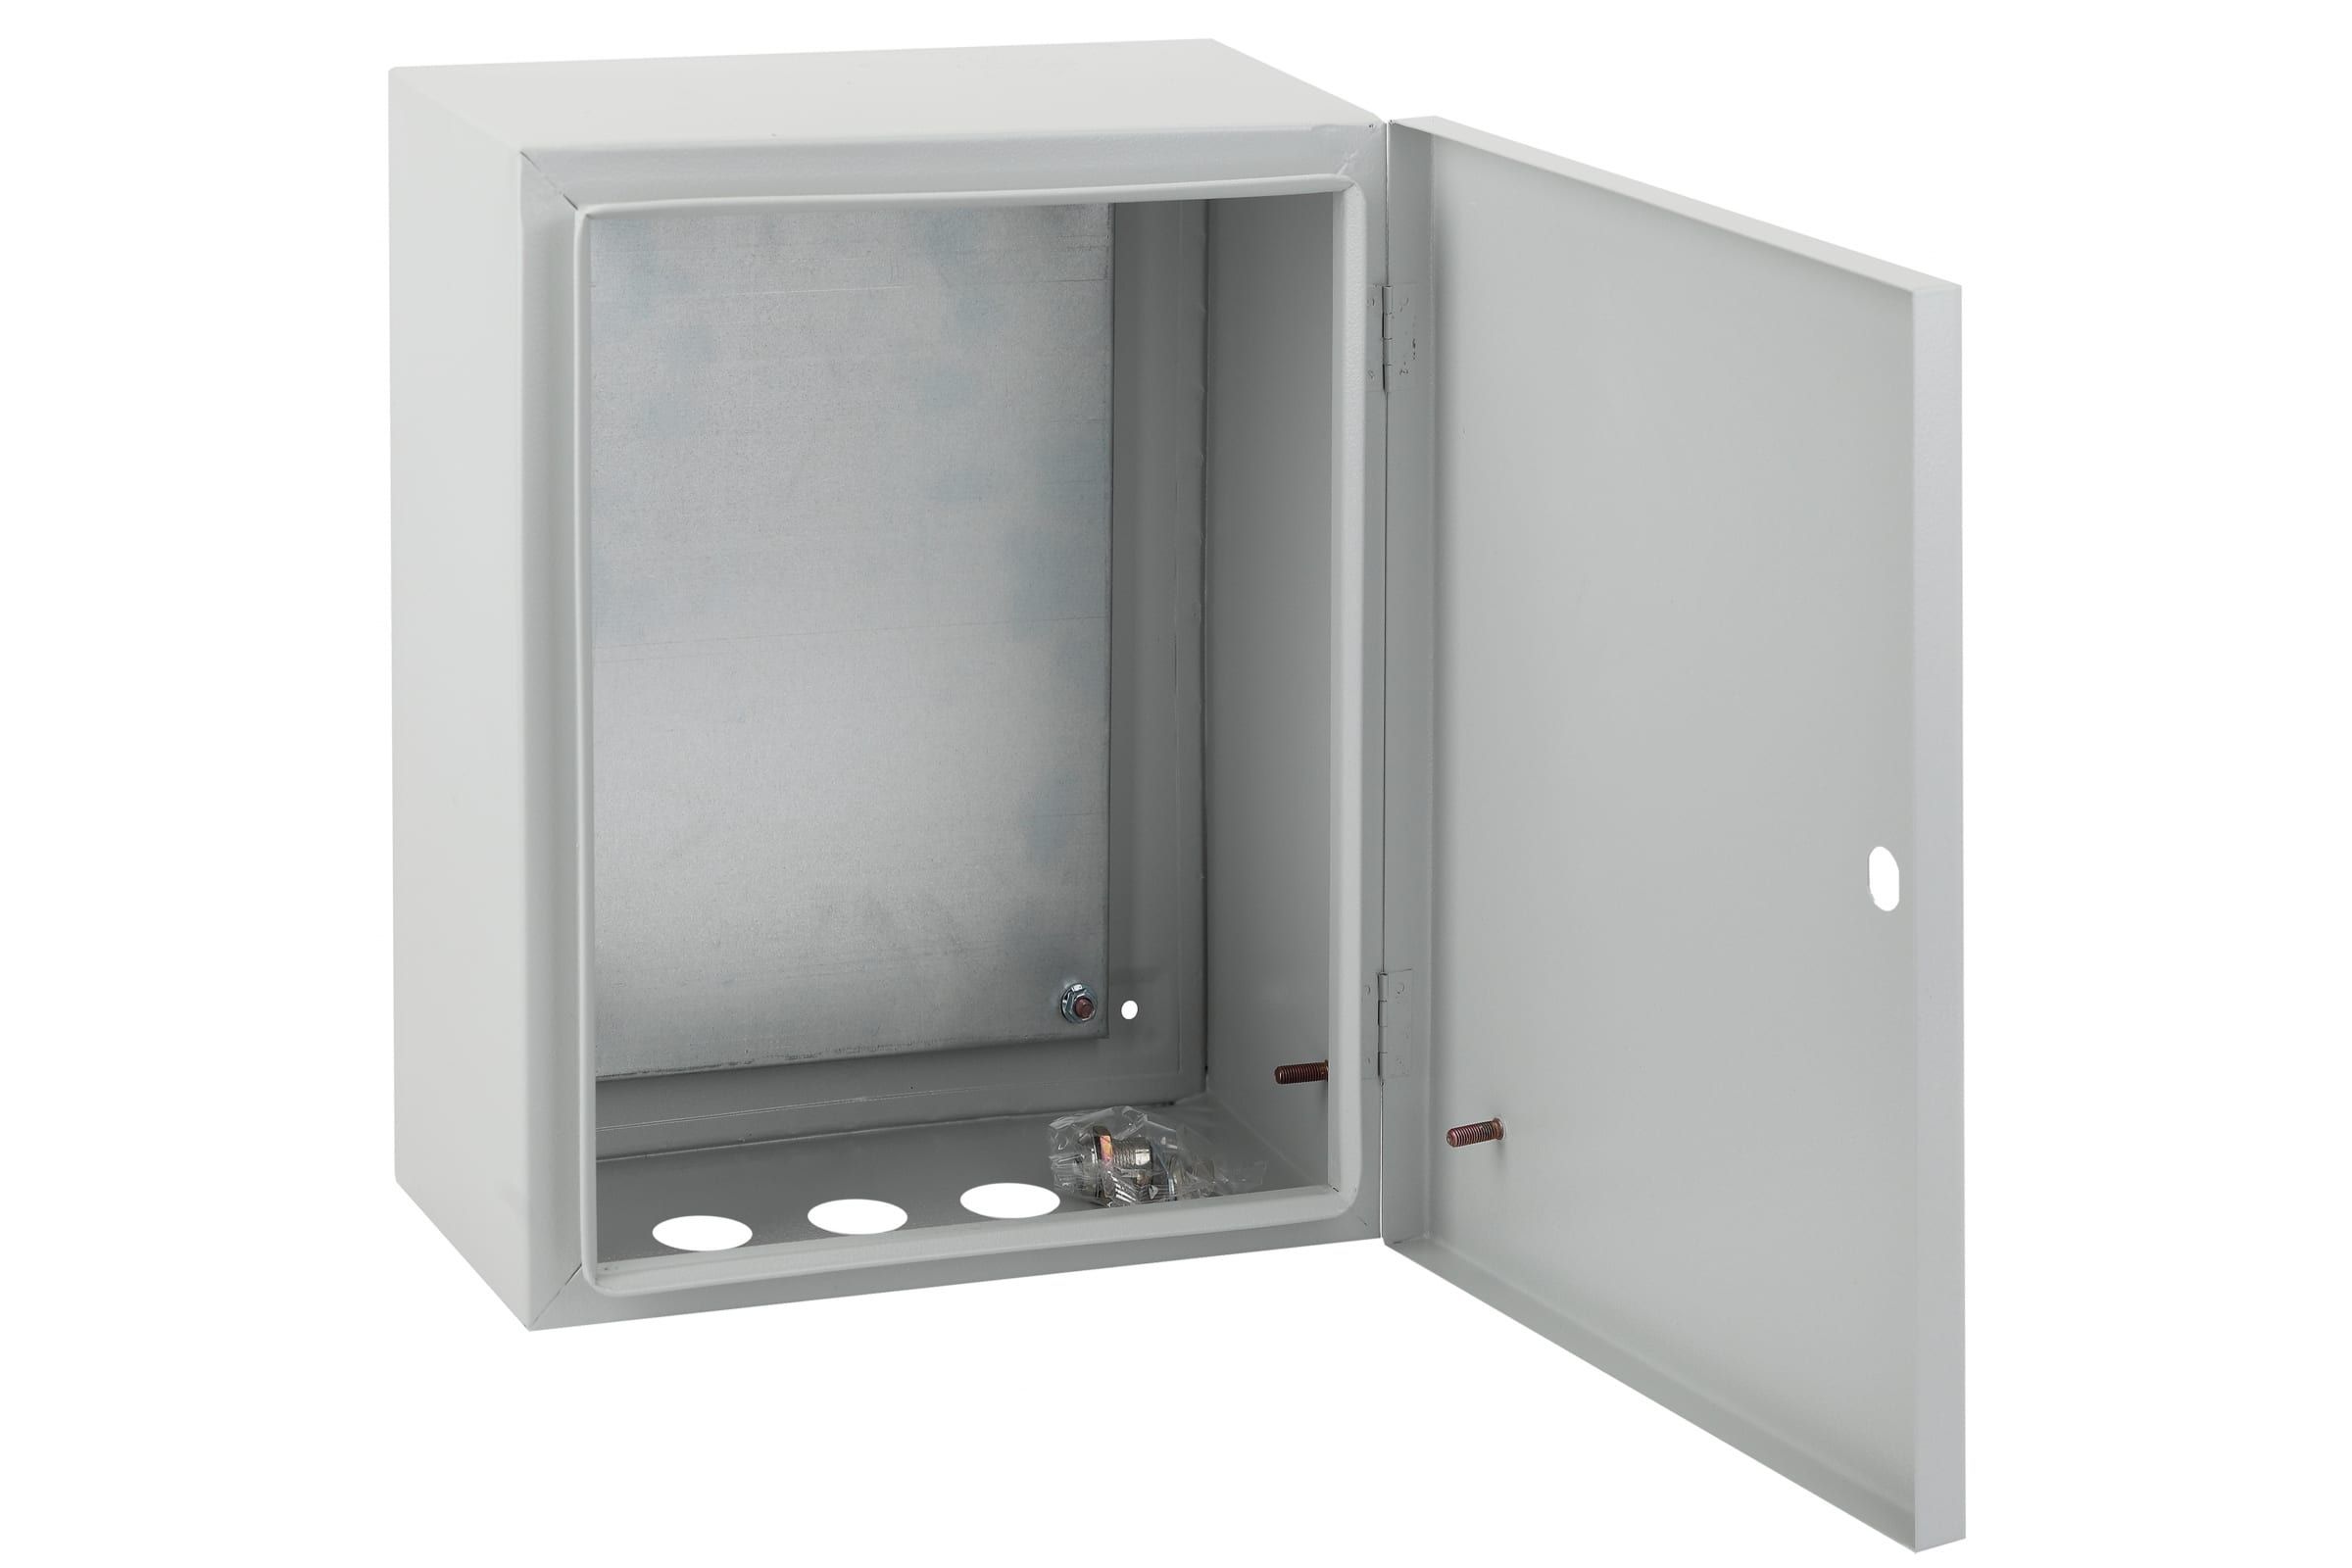 Шкаф металлический навесной шрп 150 2м для установки в помещениях емкость 150 пар